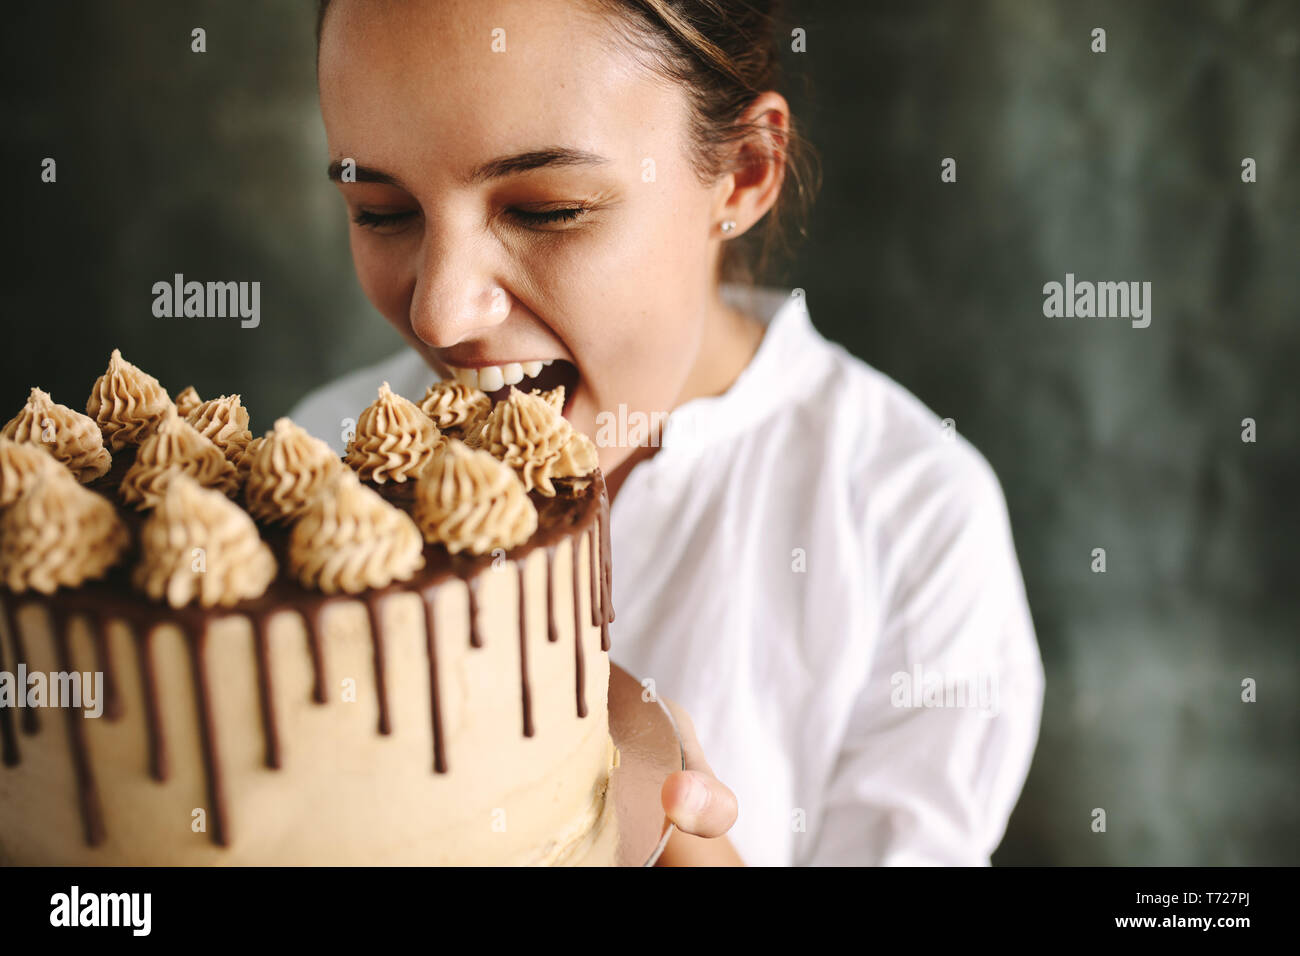 Les femmes de manger des pâtisseries gâteau. Femme chef holding un grand gâteau dans la main et prendre une bouchée. Banque D'Images